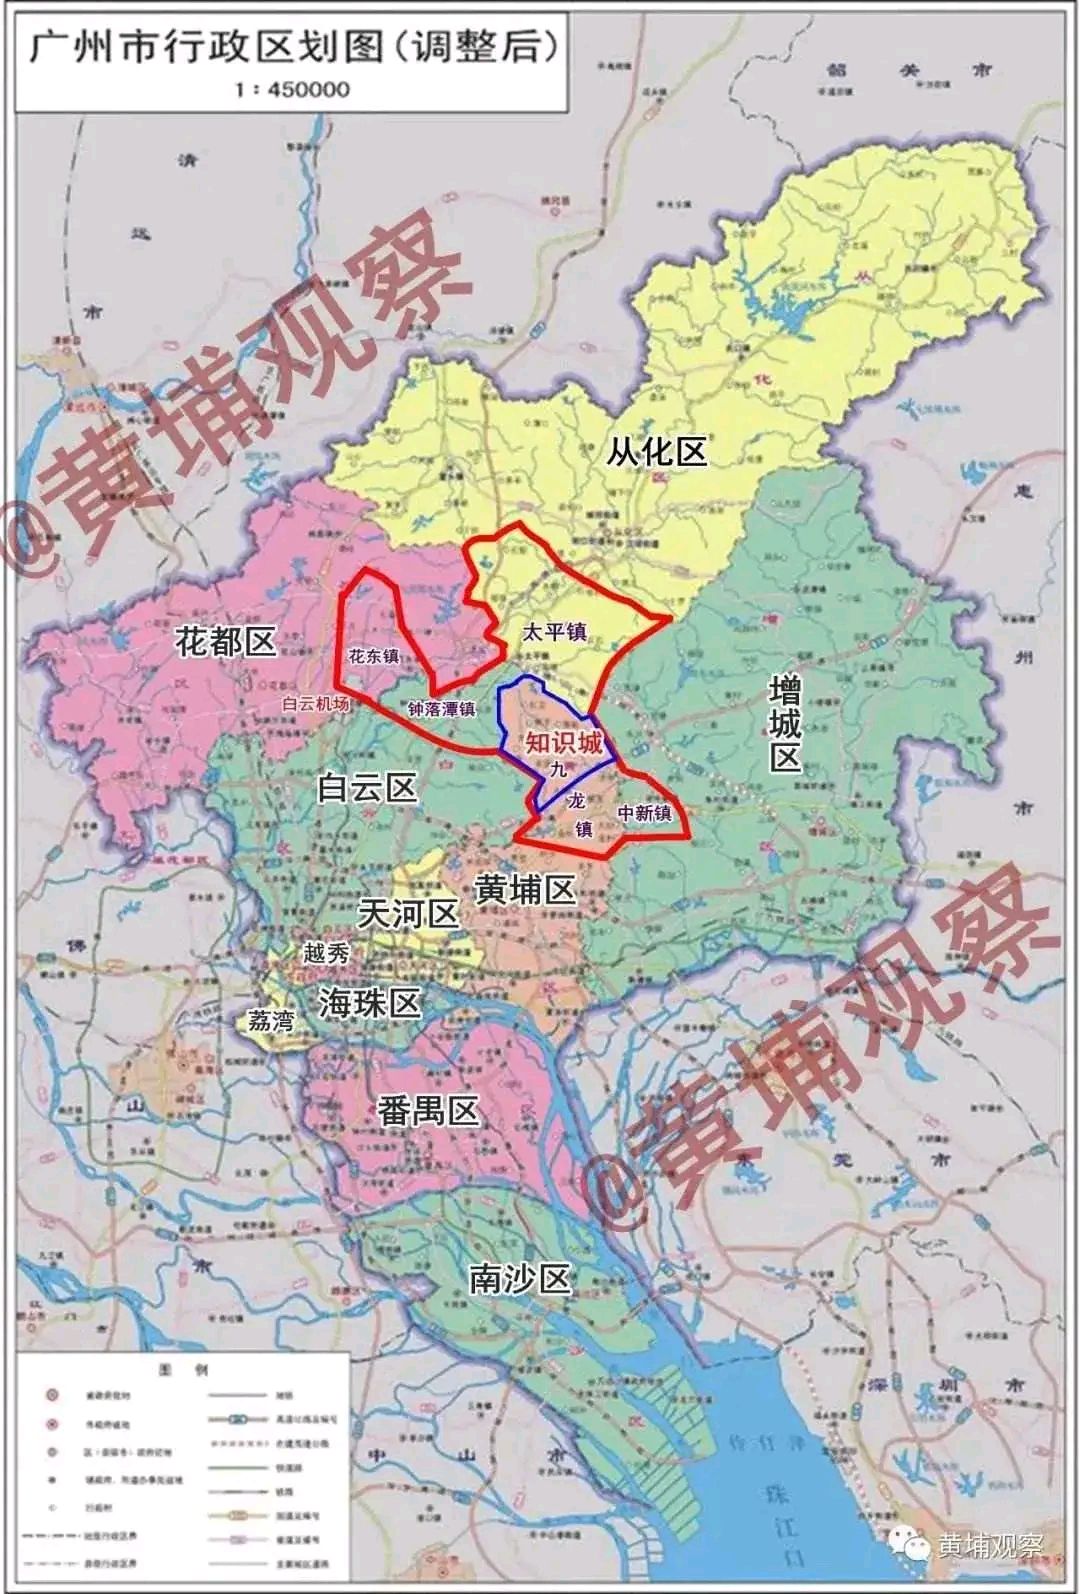 广州黄埔区知识城应该是广州的地理中心了!广州将超越深圳?